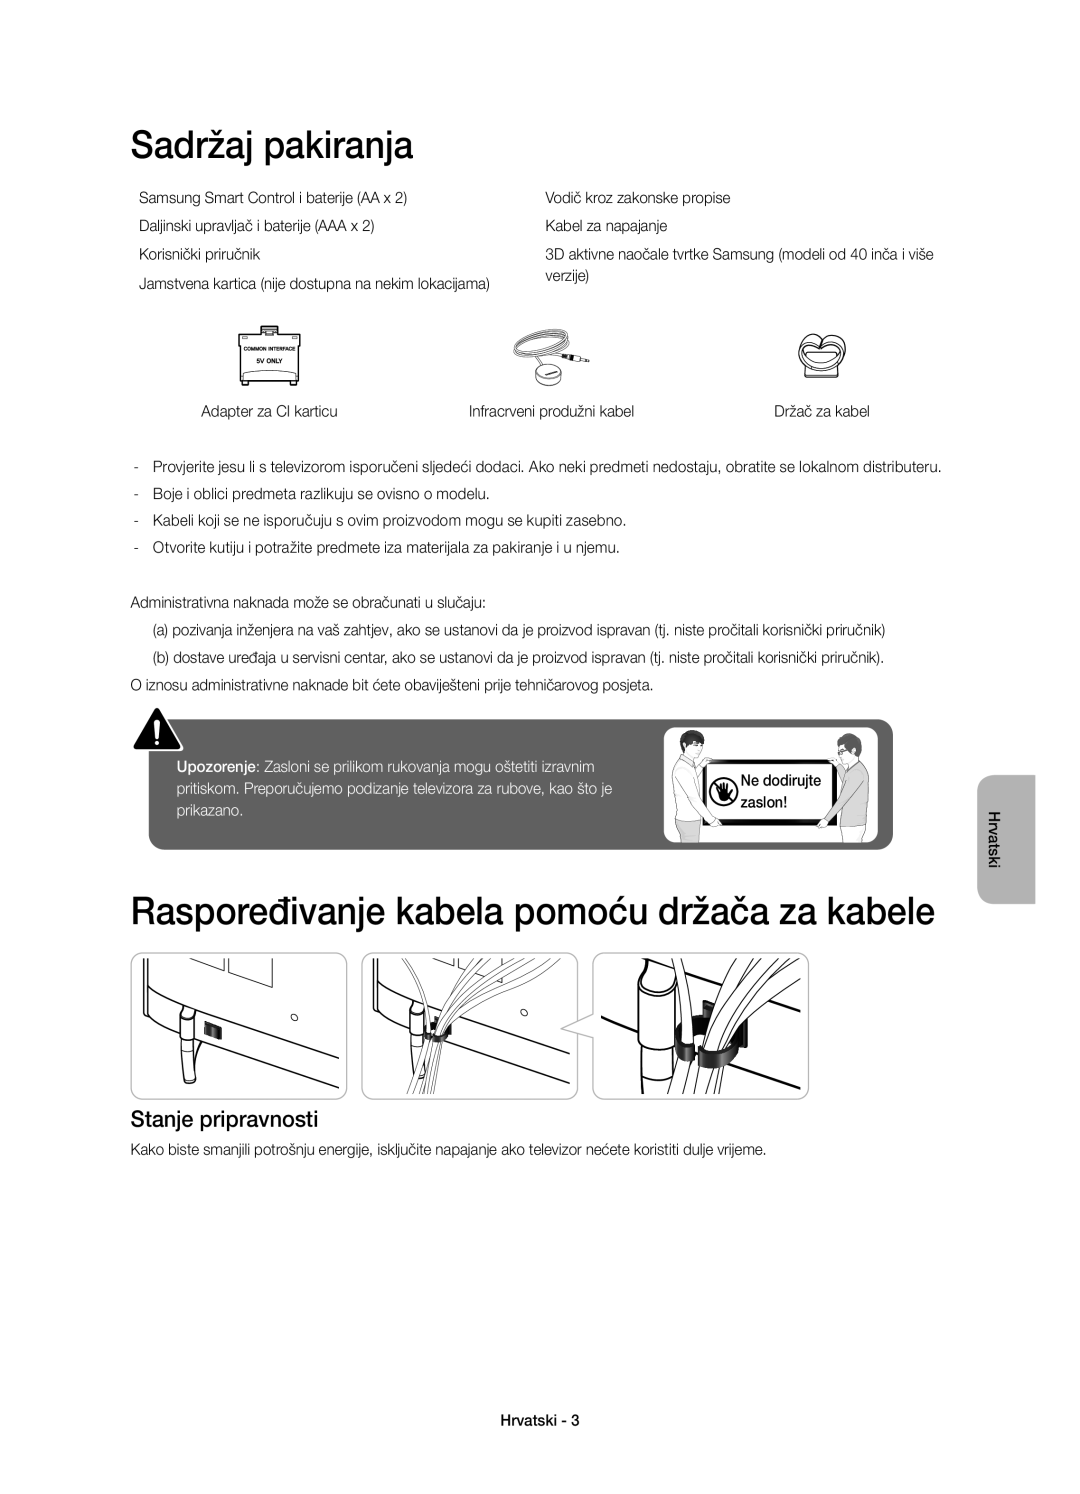 Samsung UE55H6410SSXZG manual Sadržaj pakiranja, Raspoređivanje kabela pomoću držača za kabele, Stanje pripravnosti, zaslon 